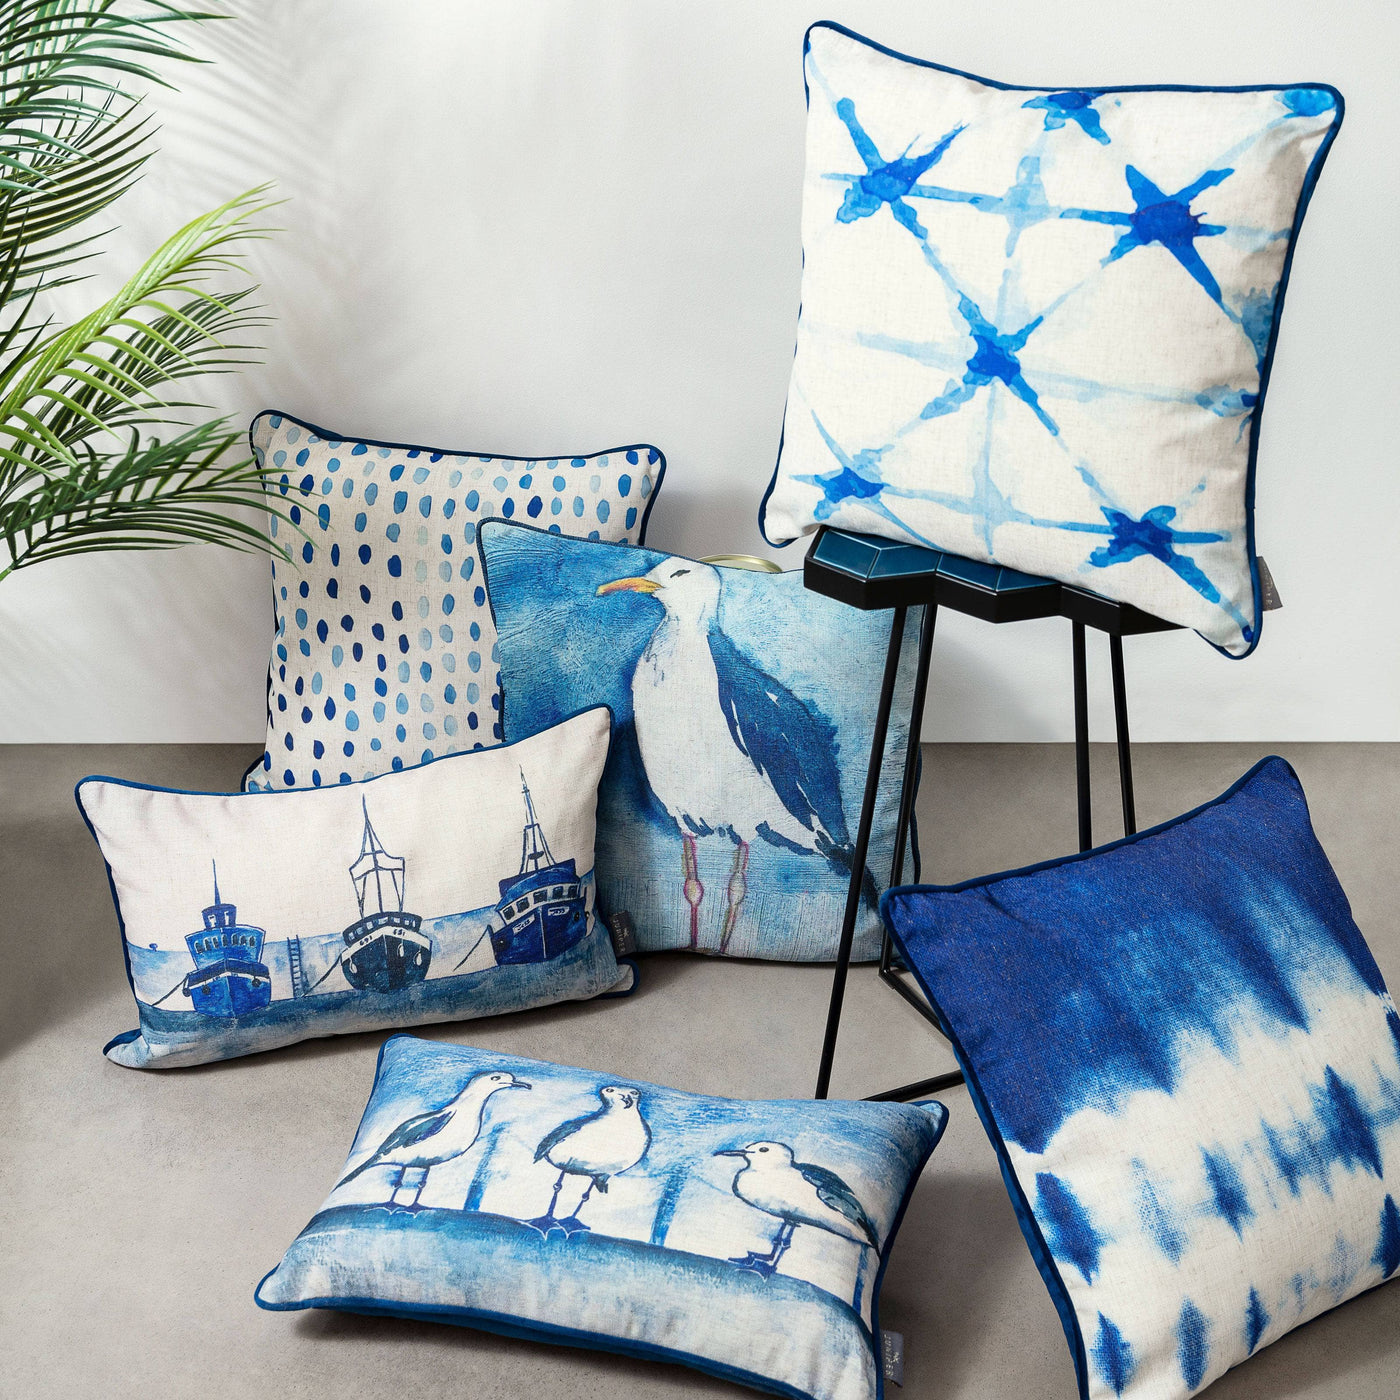 Lacy Tie Dye Cushion, Blue, 45x45 cm Cushions sazy.com